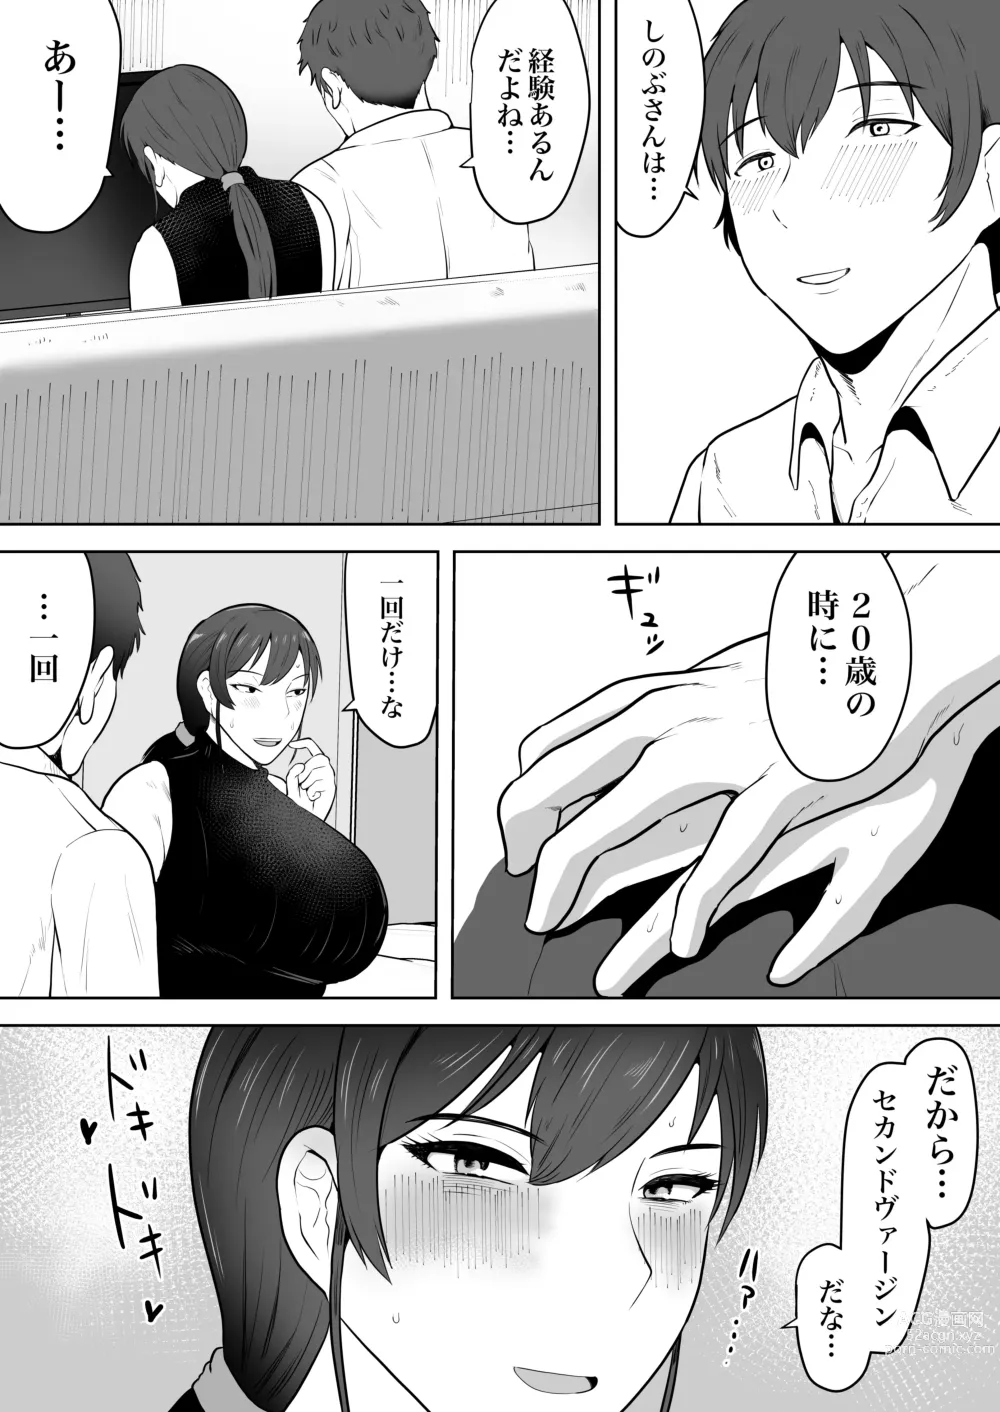 Page 15 of doujinshi Hoken no Sensei Shinobu 37-sai